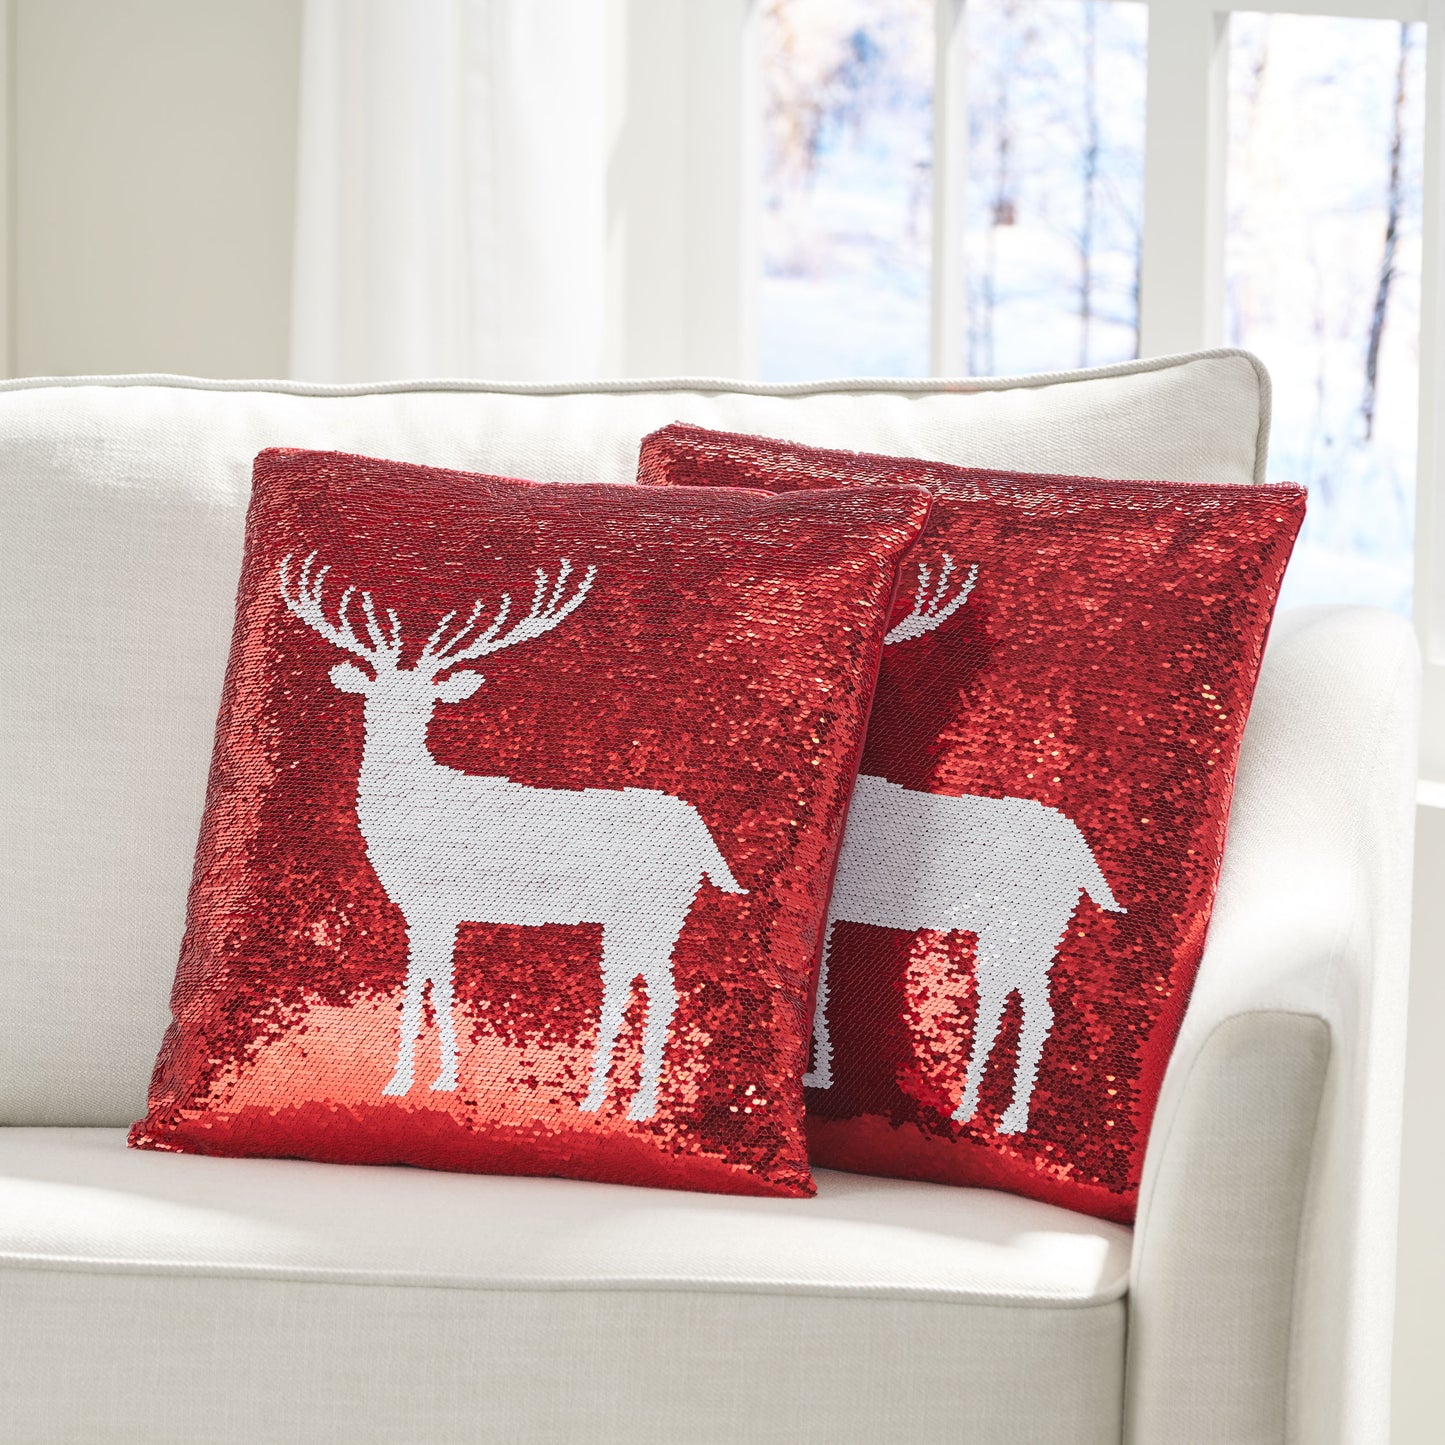 Desota Glam Sequin Christmas Throw Pillow Cover